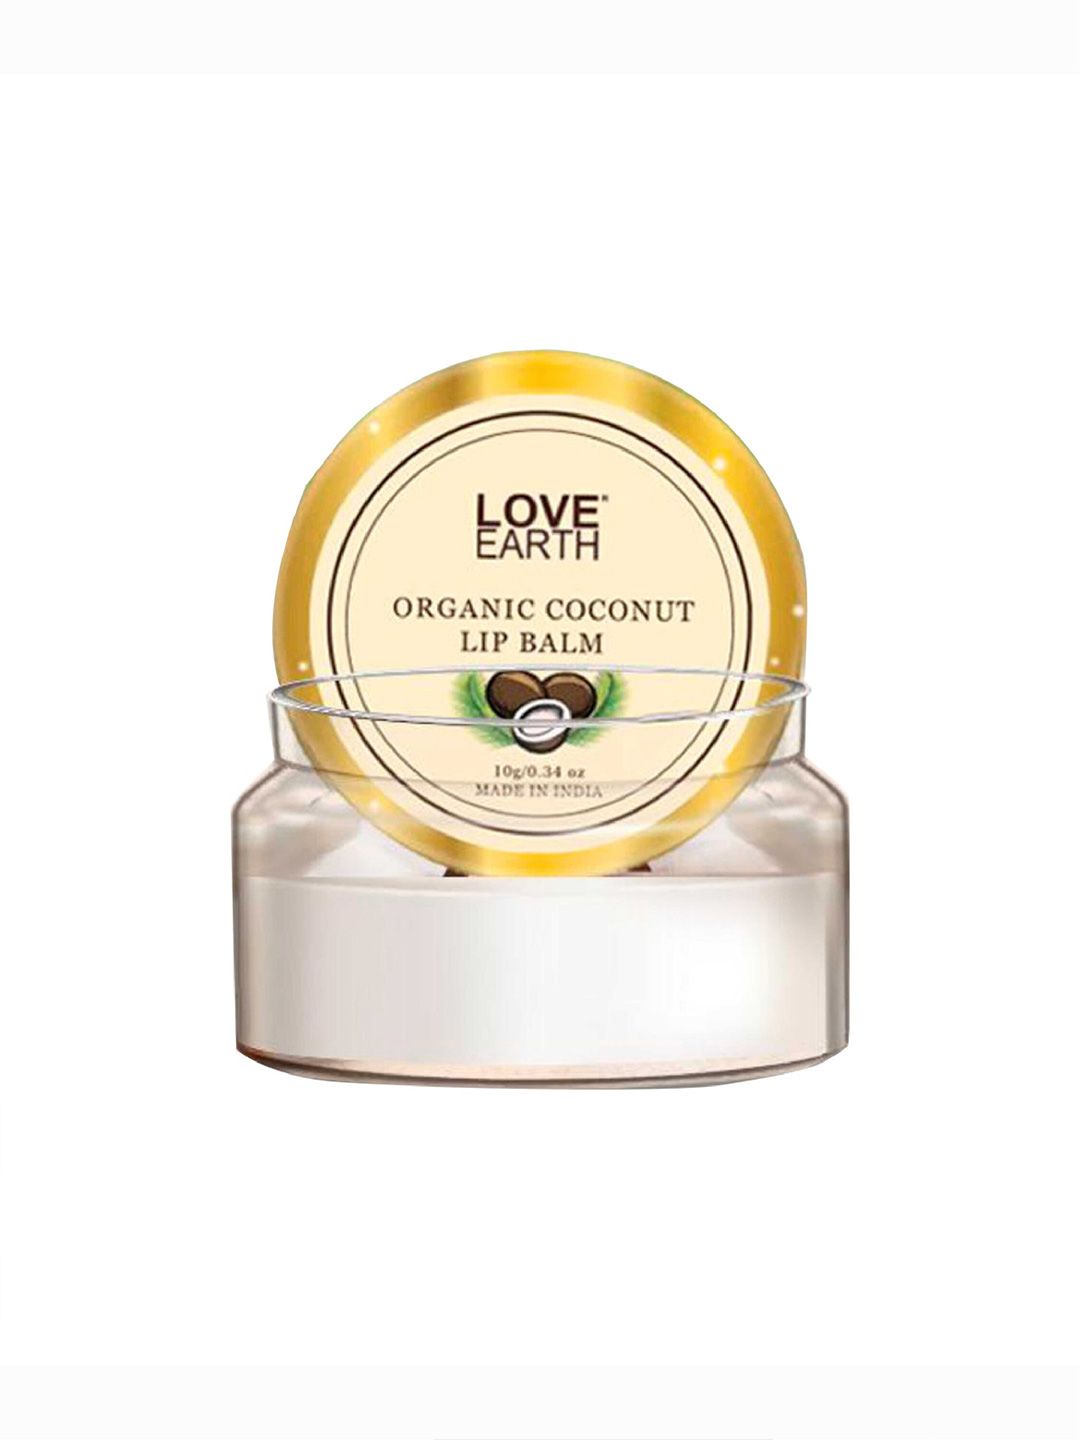 LOVE EARTH Coconut Lip Balm 10gm Price in India